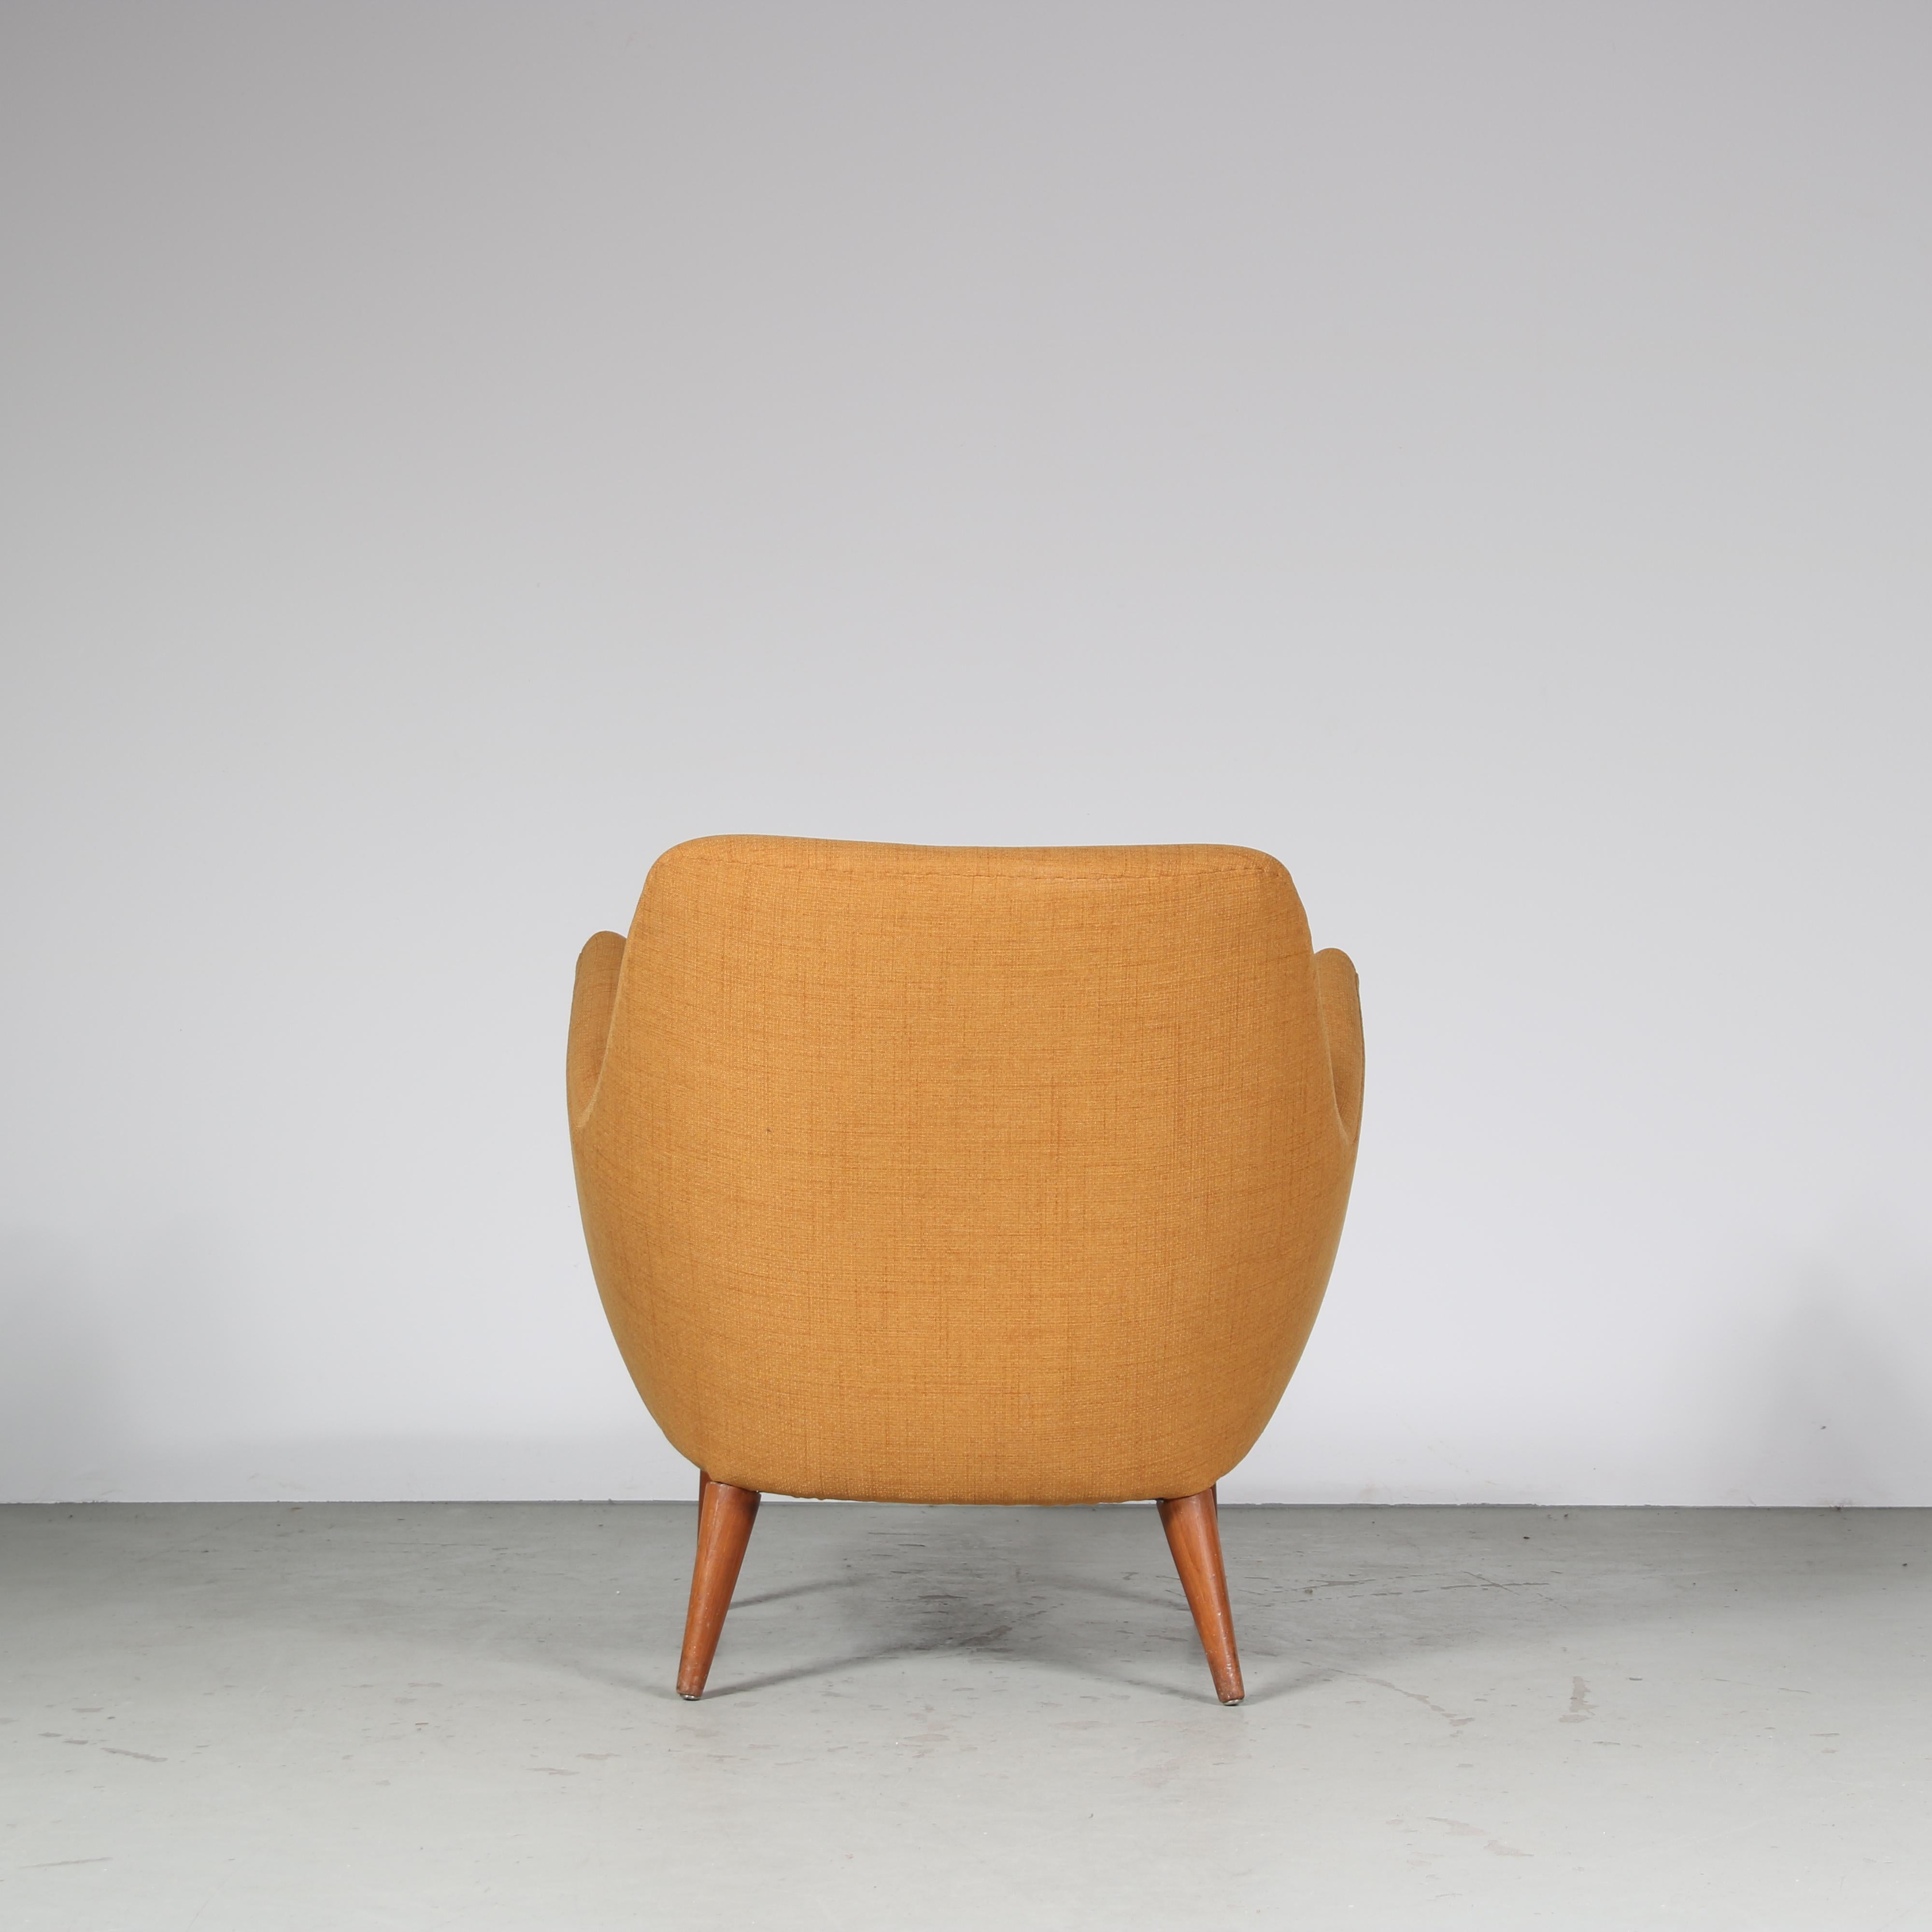 Fabric “Poet” Chair by Finn Juhl for Niels Vodder in Denmark, 1950 For Sale